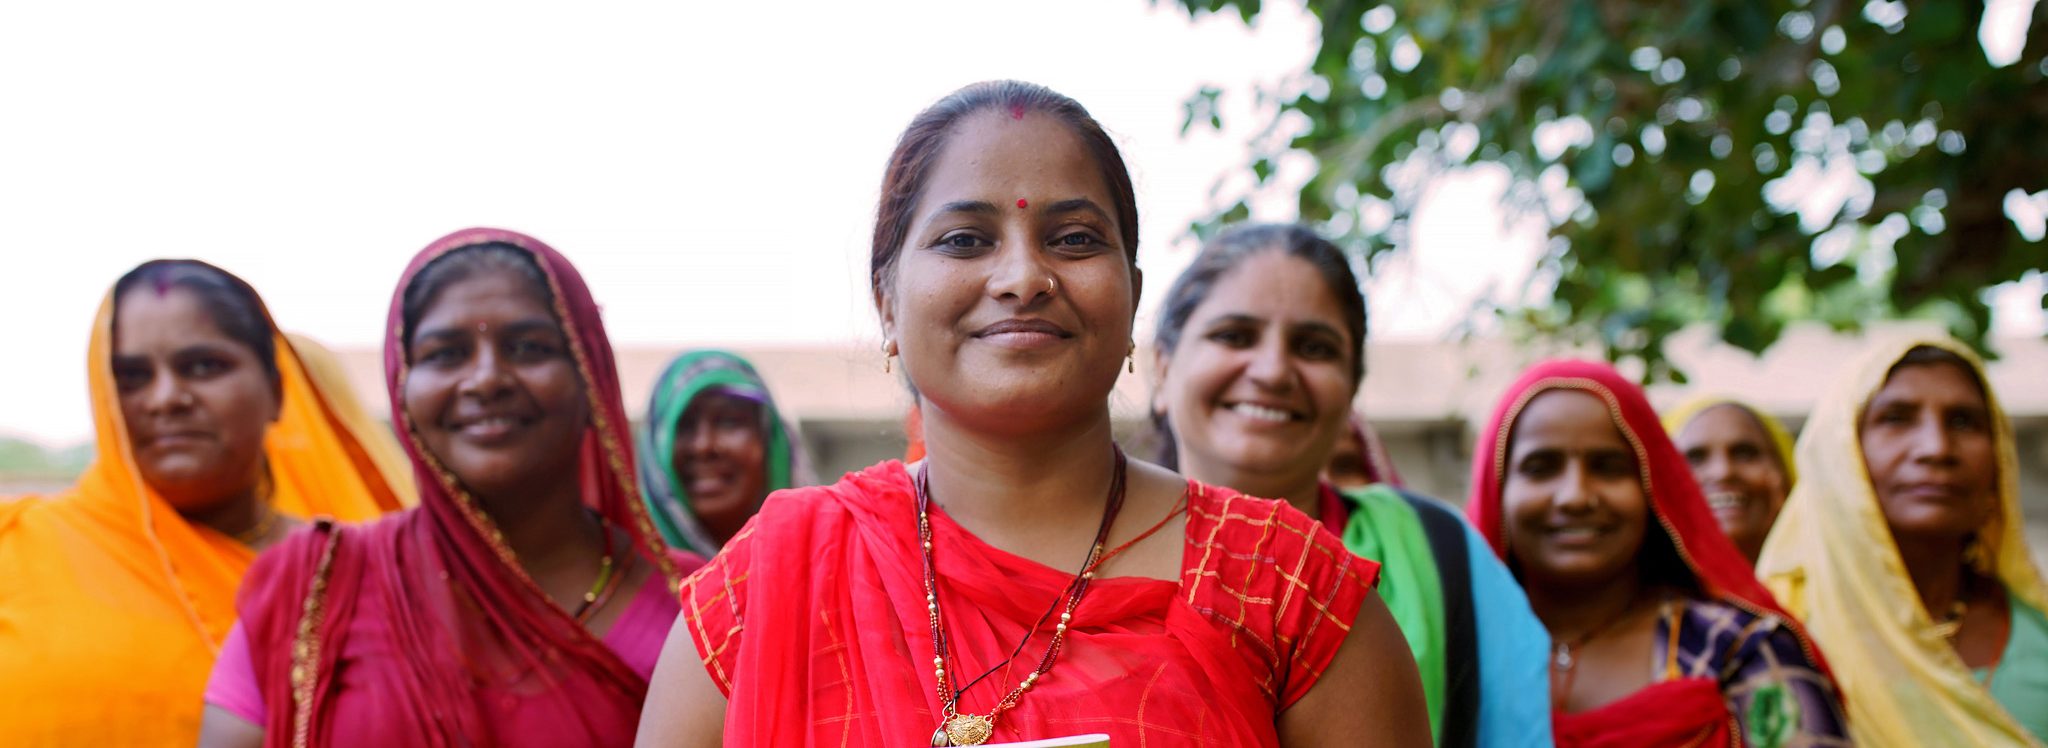 Indische Frauen in bunten Kleidern lächeln glücklich in die Kamera. Als UN Women Friend und regelmäßige Spender*in ermöglichen Sie Frauen weltweit die Hilfe zur Selbsthilfe.